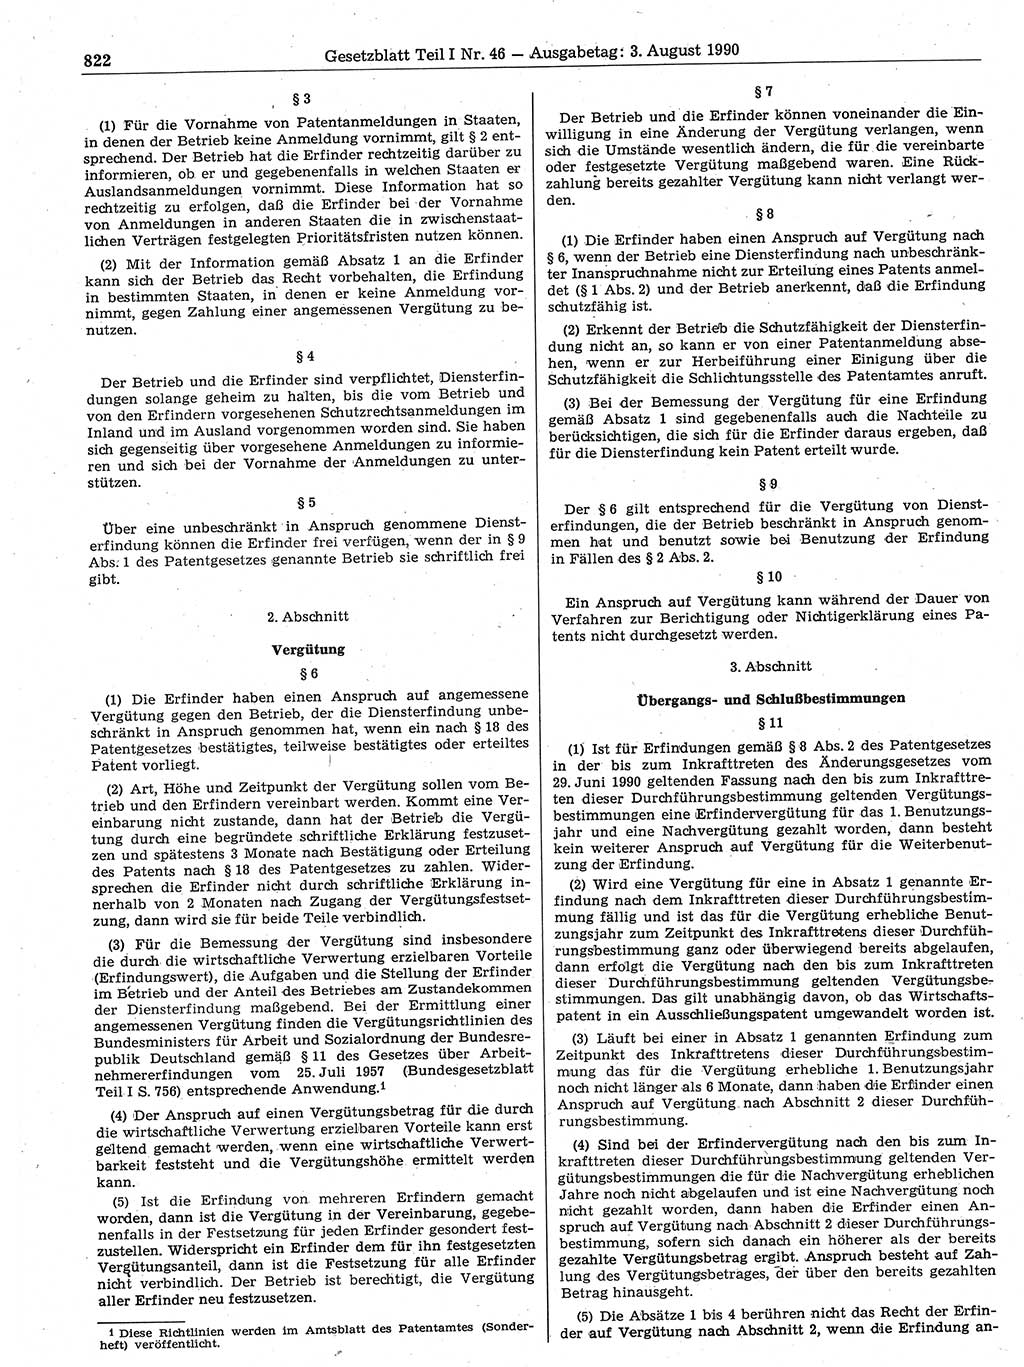 Gesetzblatt (GBl.) der Deutschen Demokratischen Republik (DDR) Teil Ⅰ 1990, Seite 822 (GBl. DDR Ⅰ 1990, S. 822)